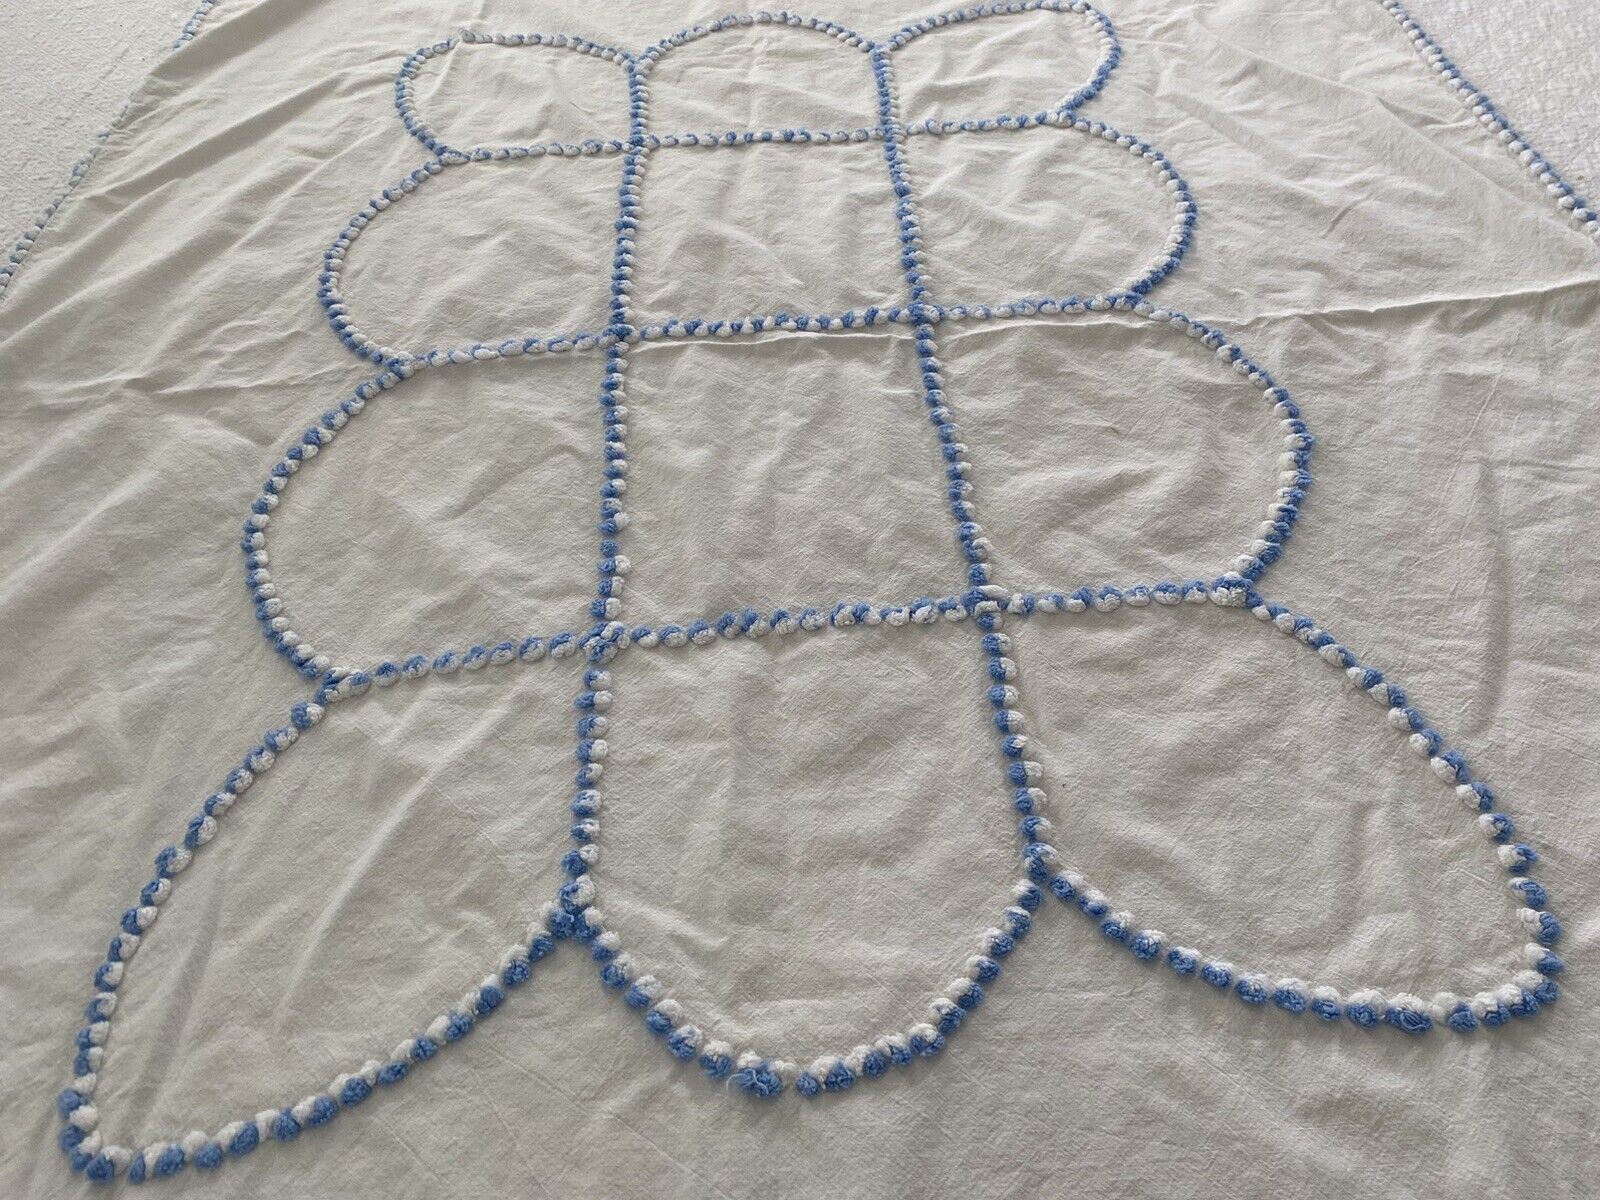 Vintage Cotton Baby Crib Blanket W/ Blue Chenille PomPoms 60”x39” Summer Weight